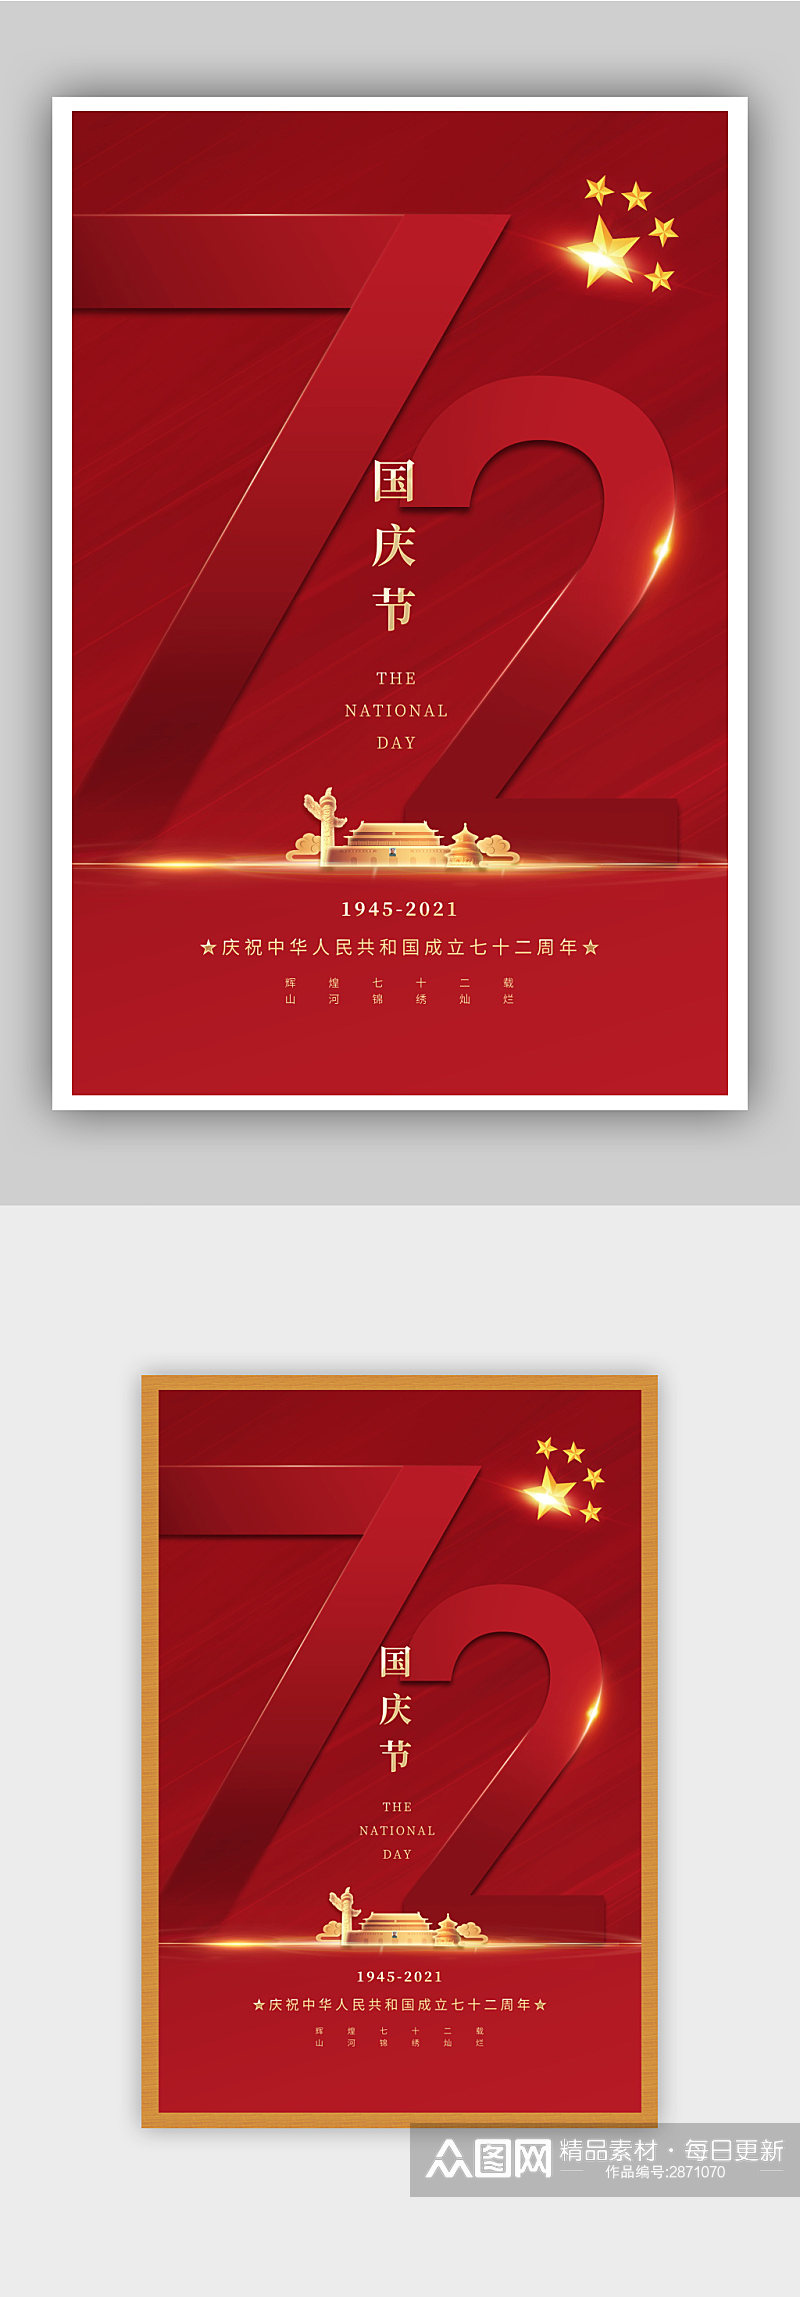 红色大气盛世华诞国庆宣传海报素材